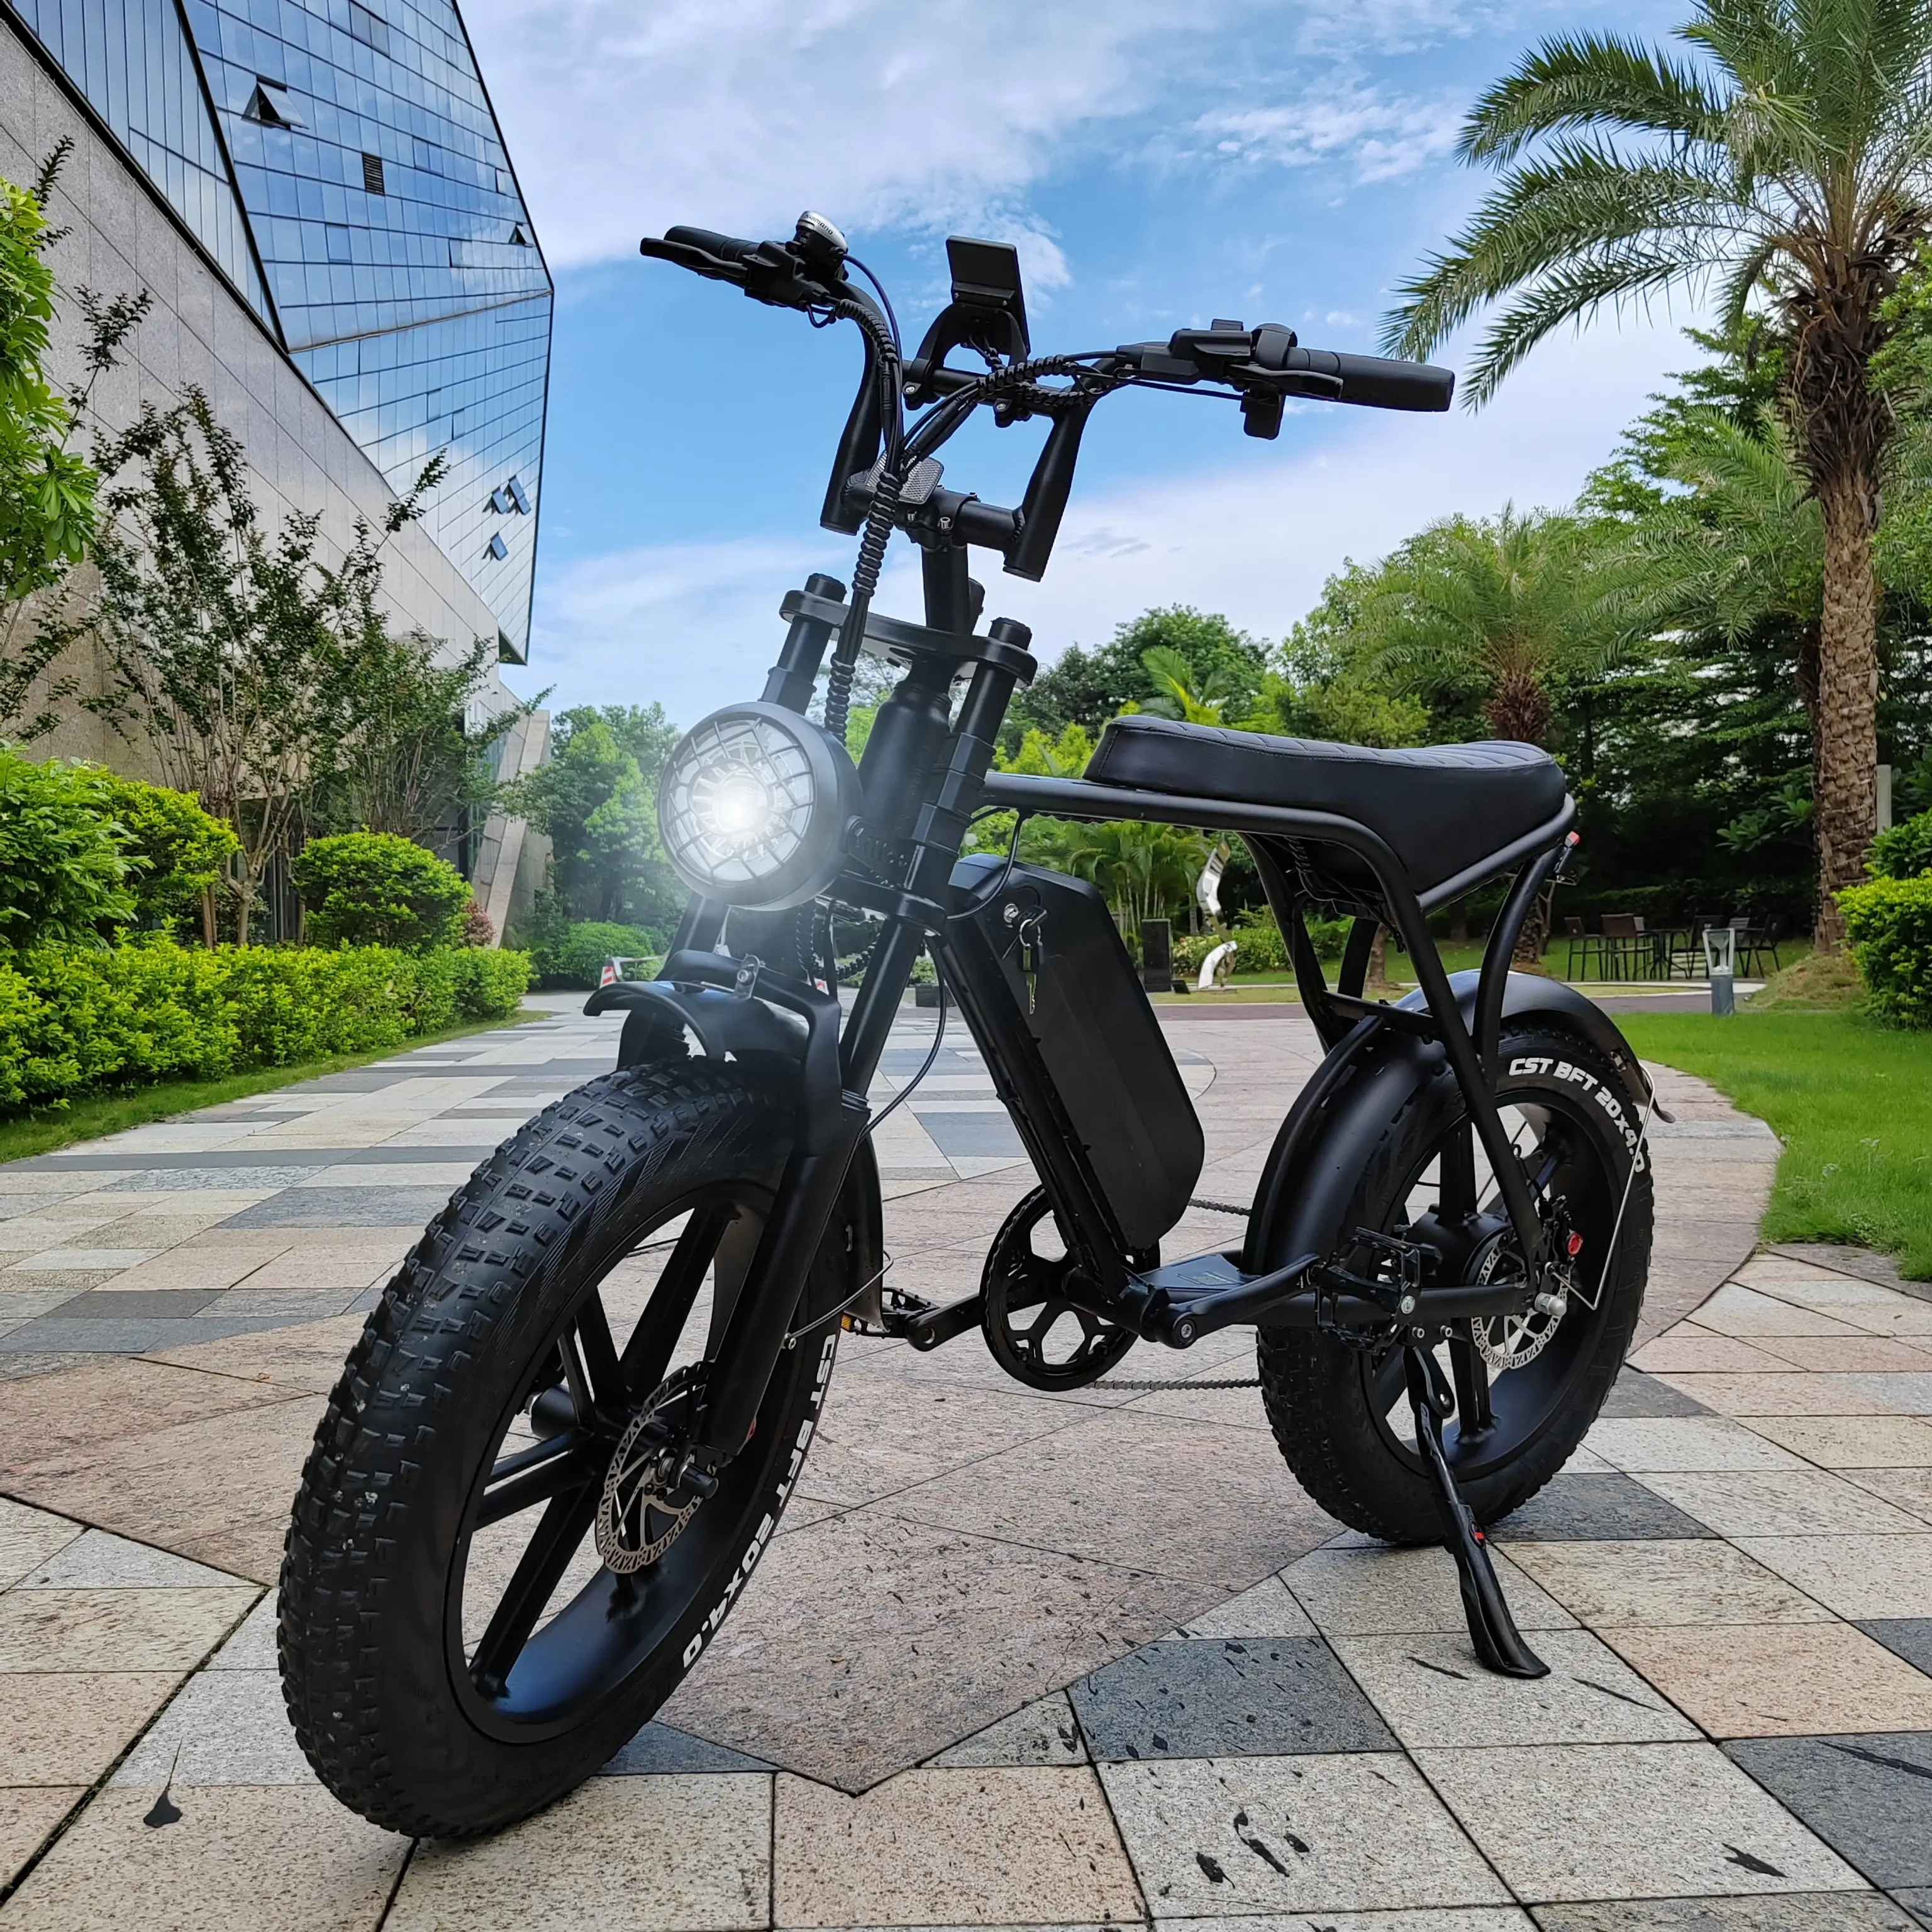 EU 미국 창고 1000w 레트로 먼지 지방 타이어 전자 자전거 OUXI V8 H9 2.0 장거리 20*4.0 "오프로드 전기 자전거 250w Fatbike 25 km/h